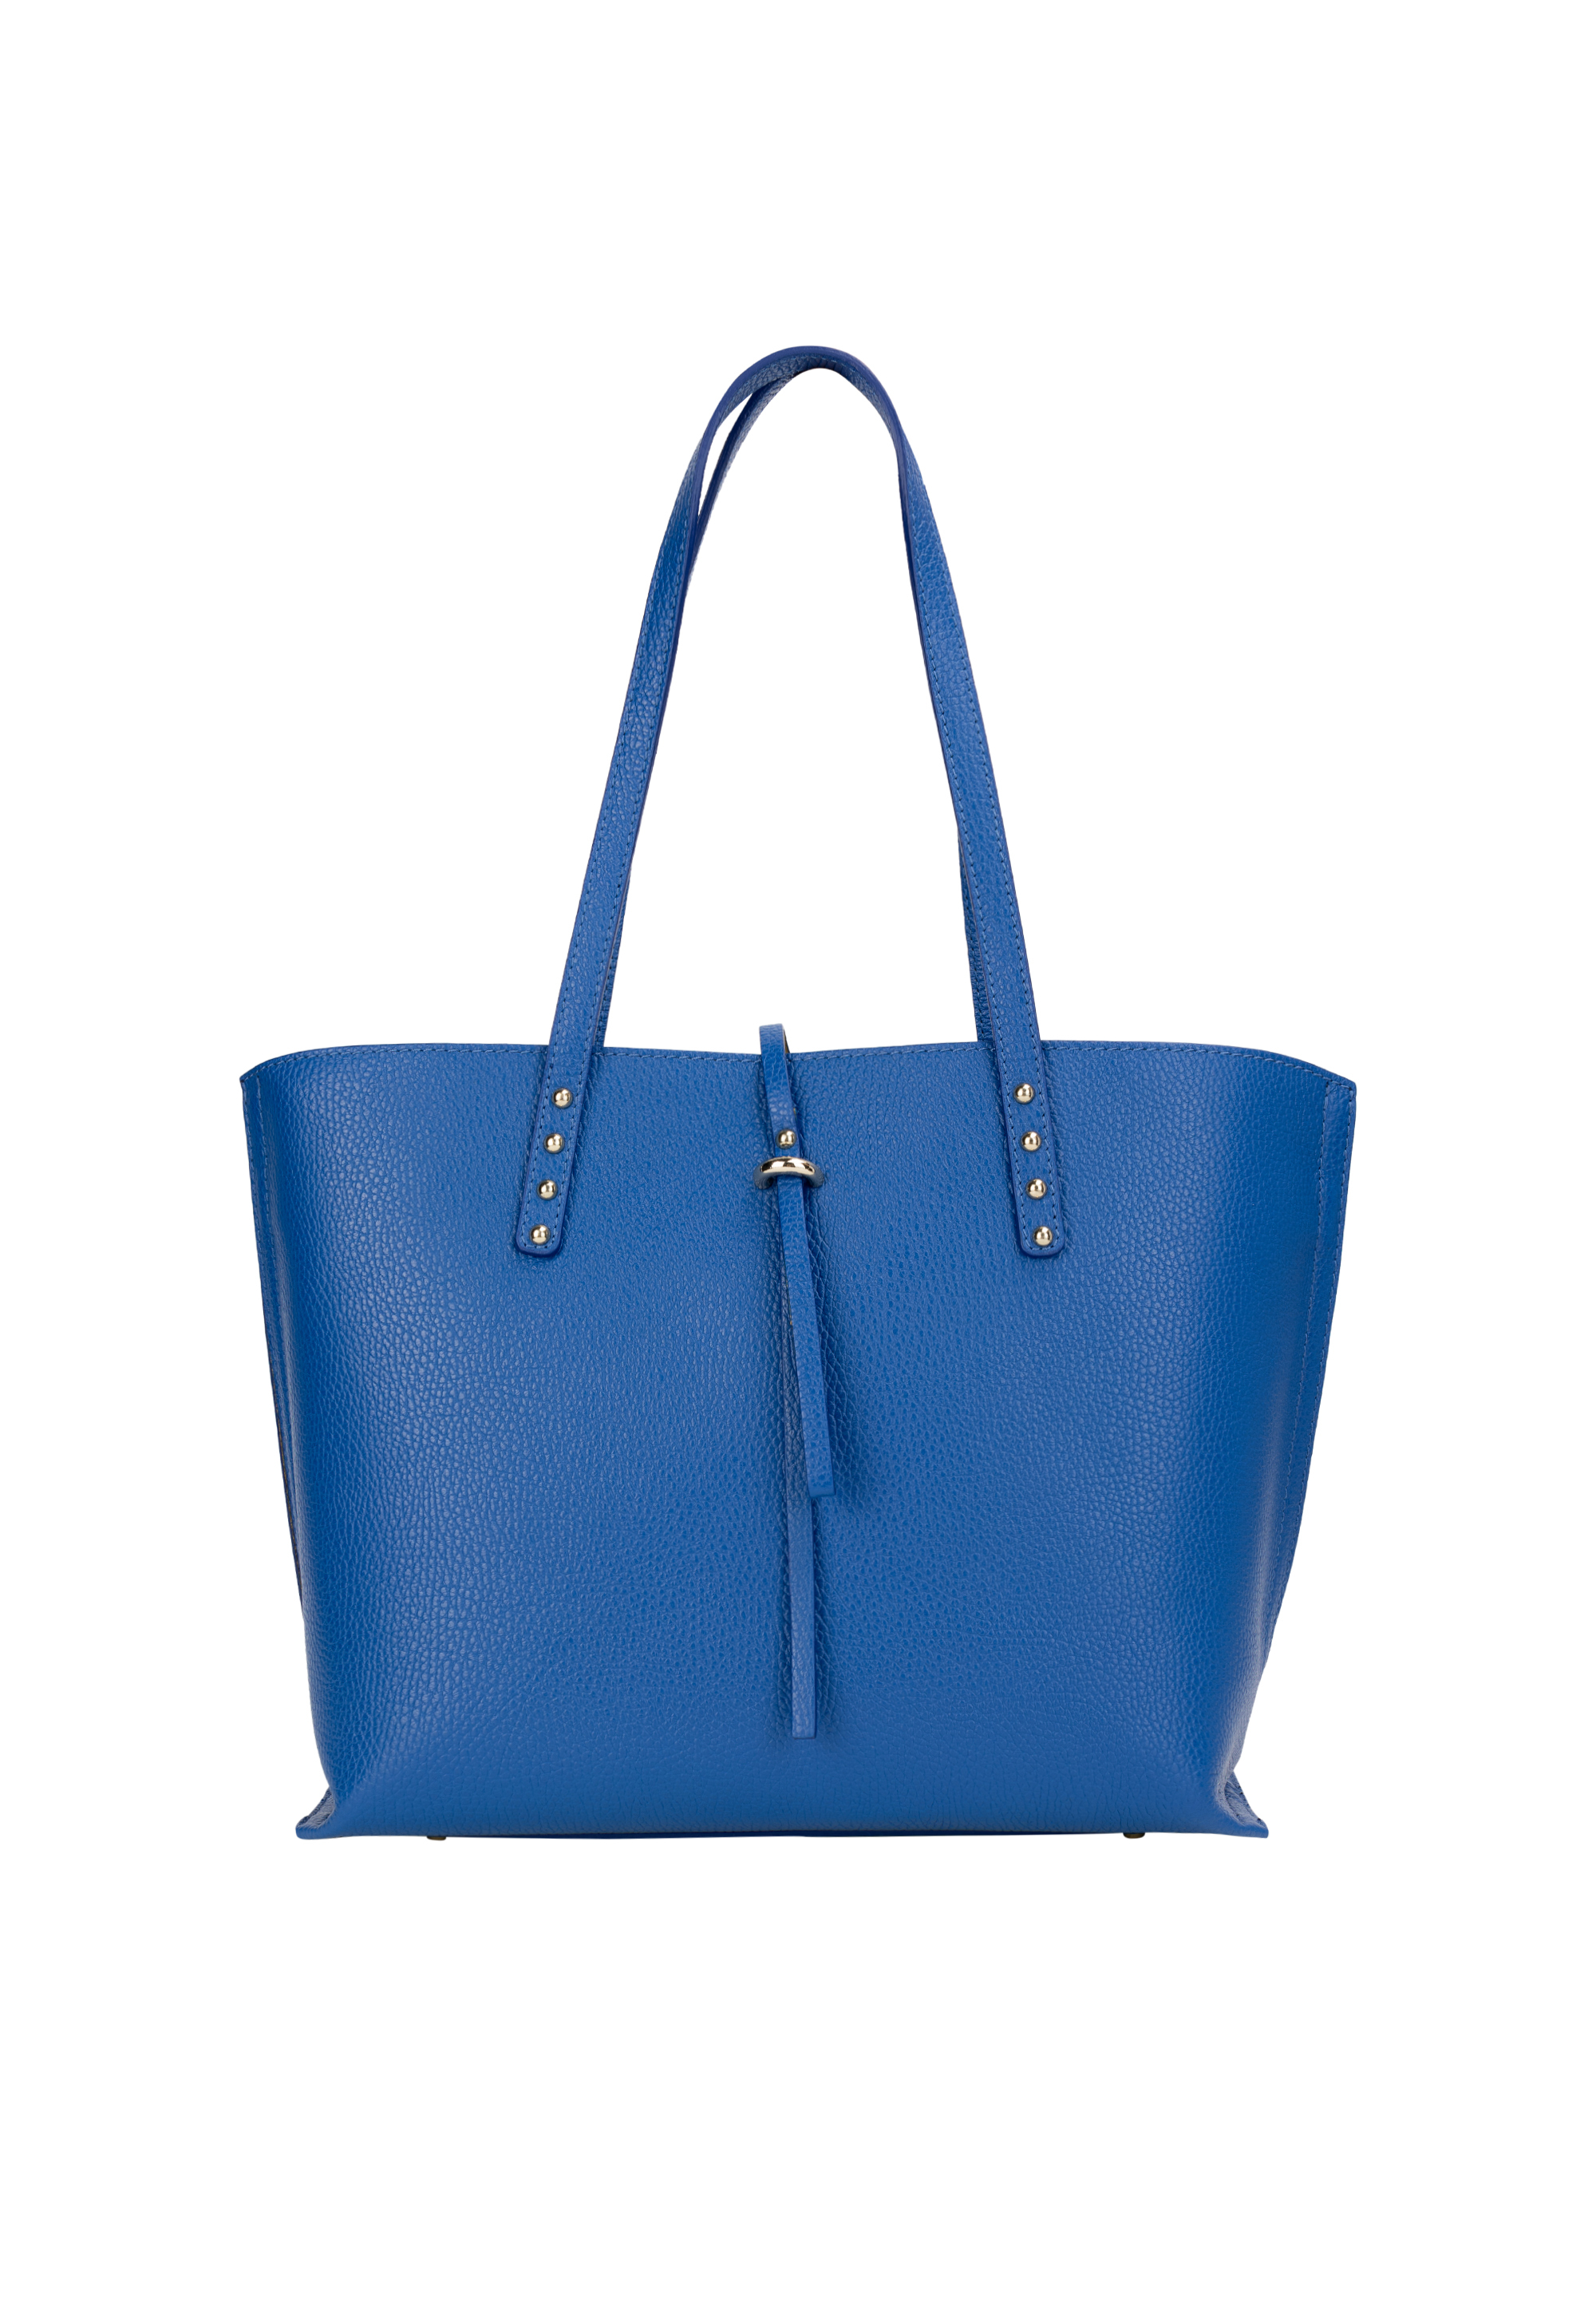 Сумка через плечо NAEMI Handtasche, цвет Azurblau сумка через плечо naemi handtasche цвет dubarry